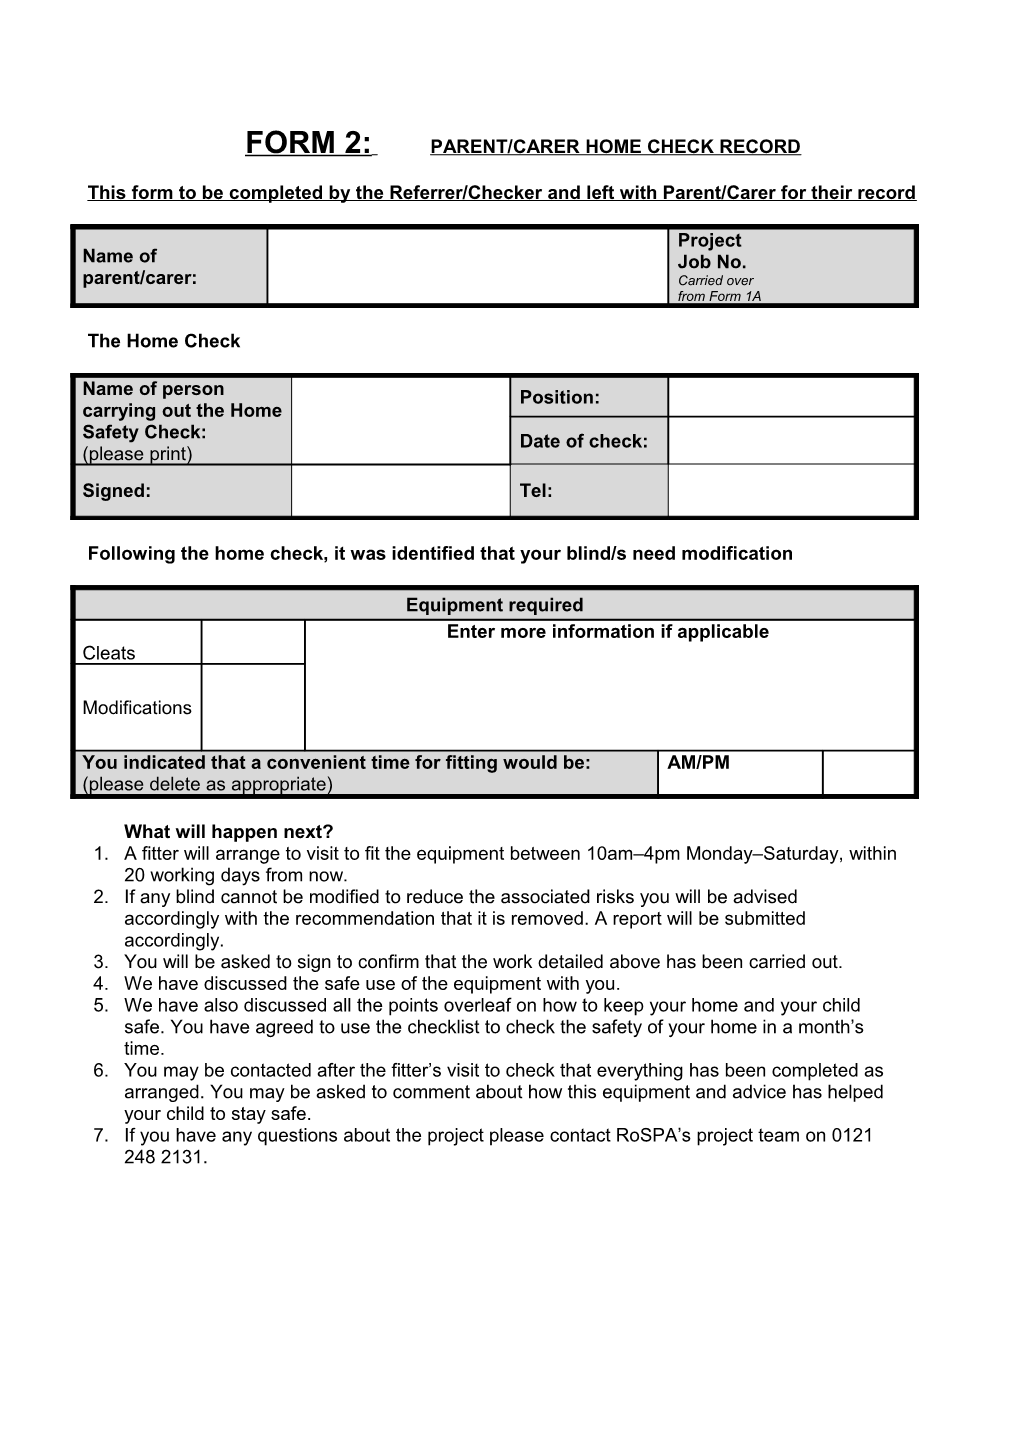 Form 2: Parent/Carer Home Check Record